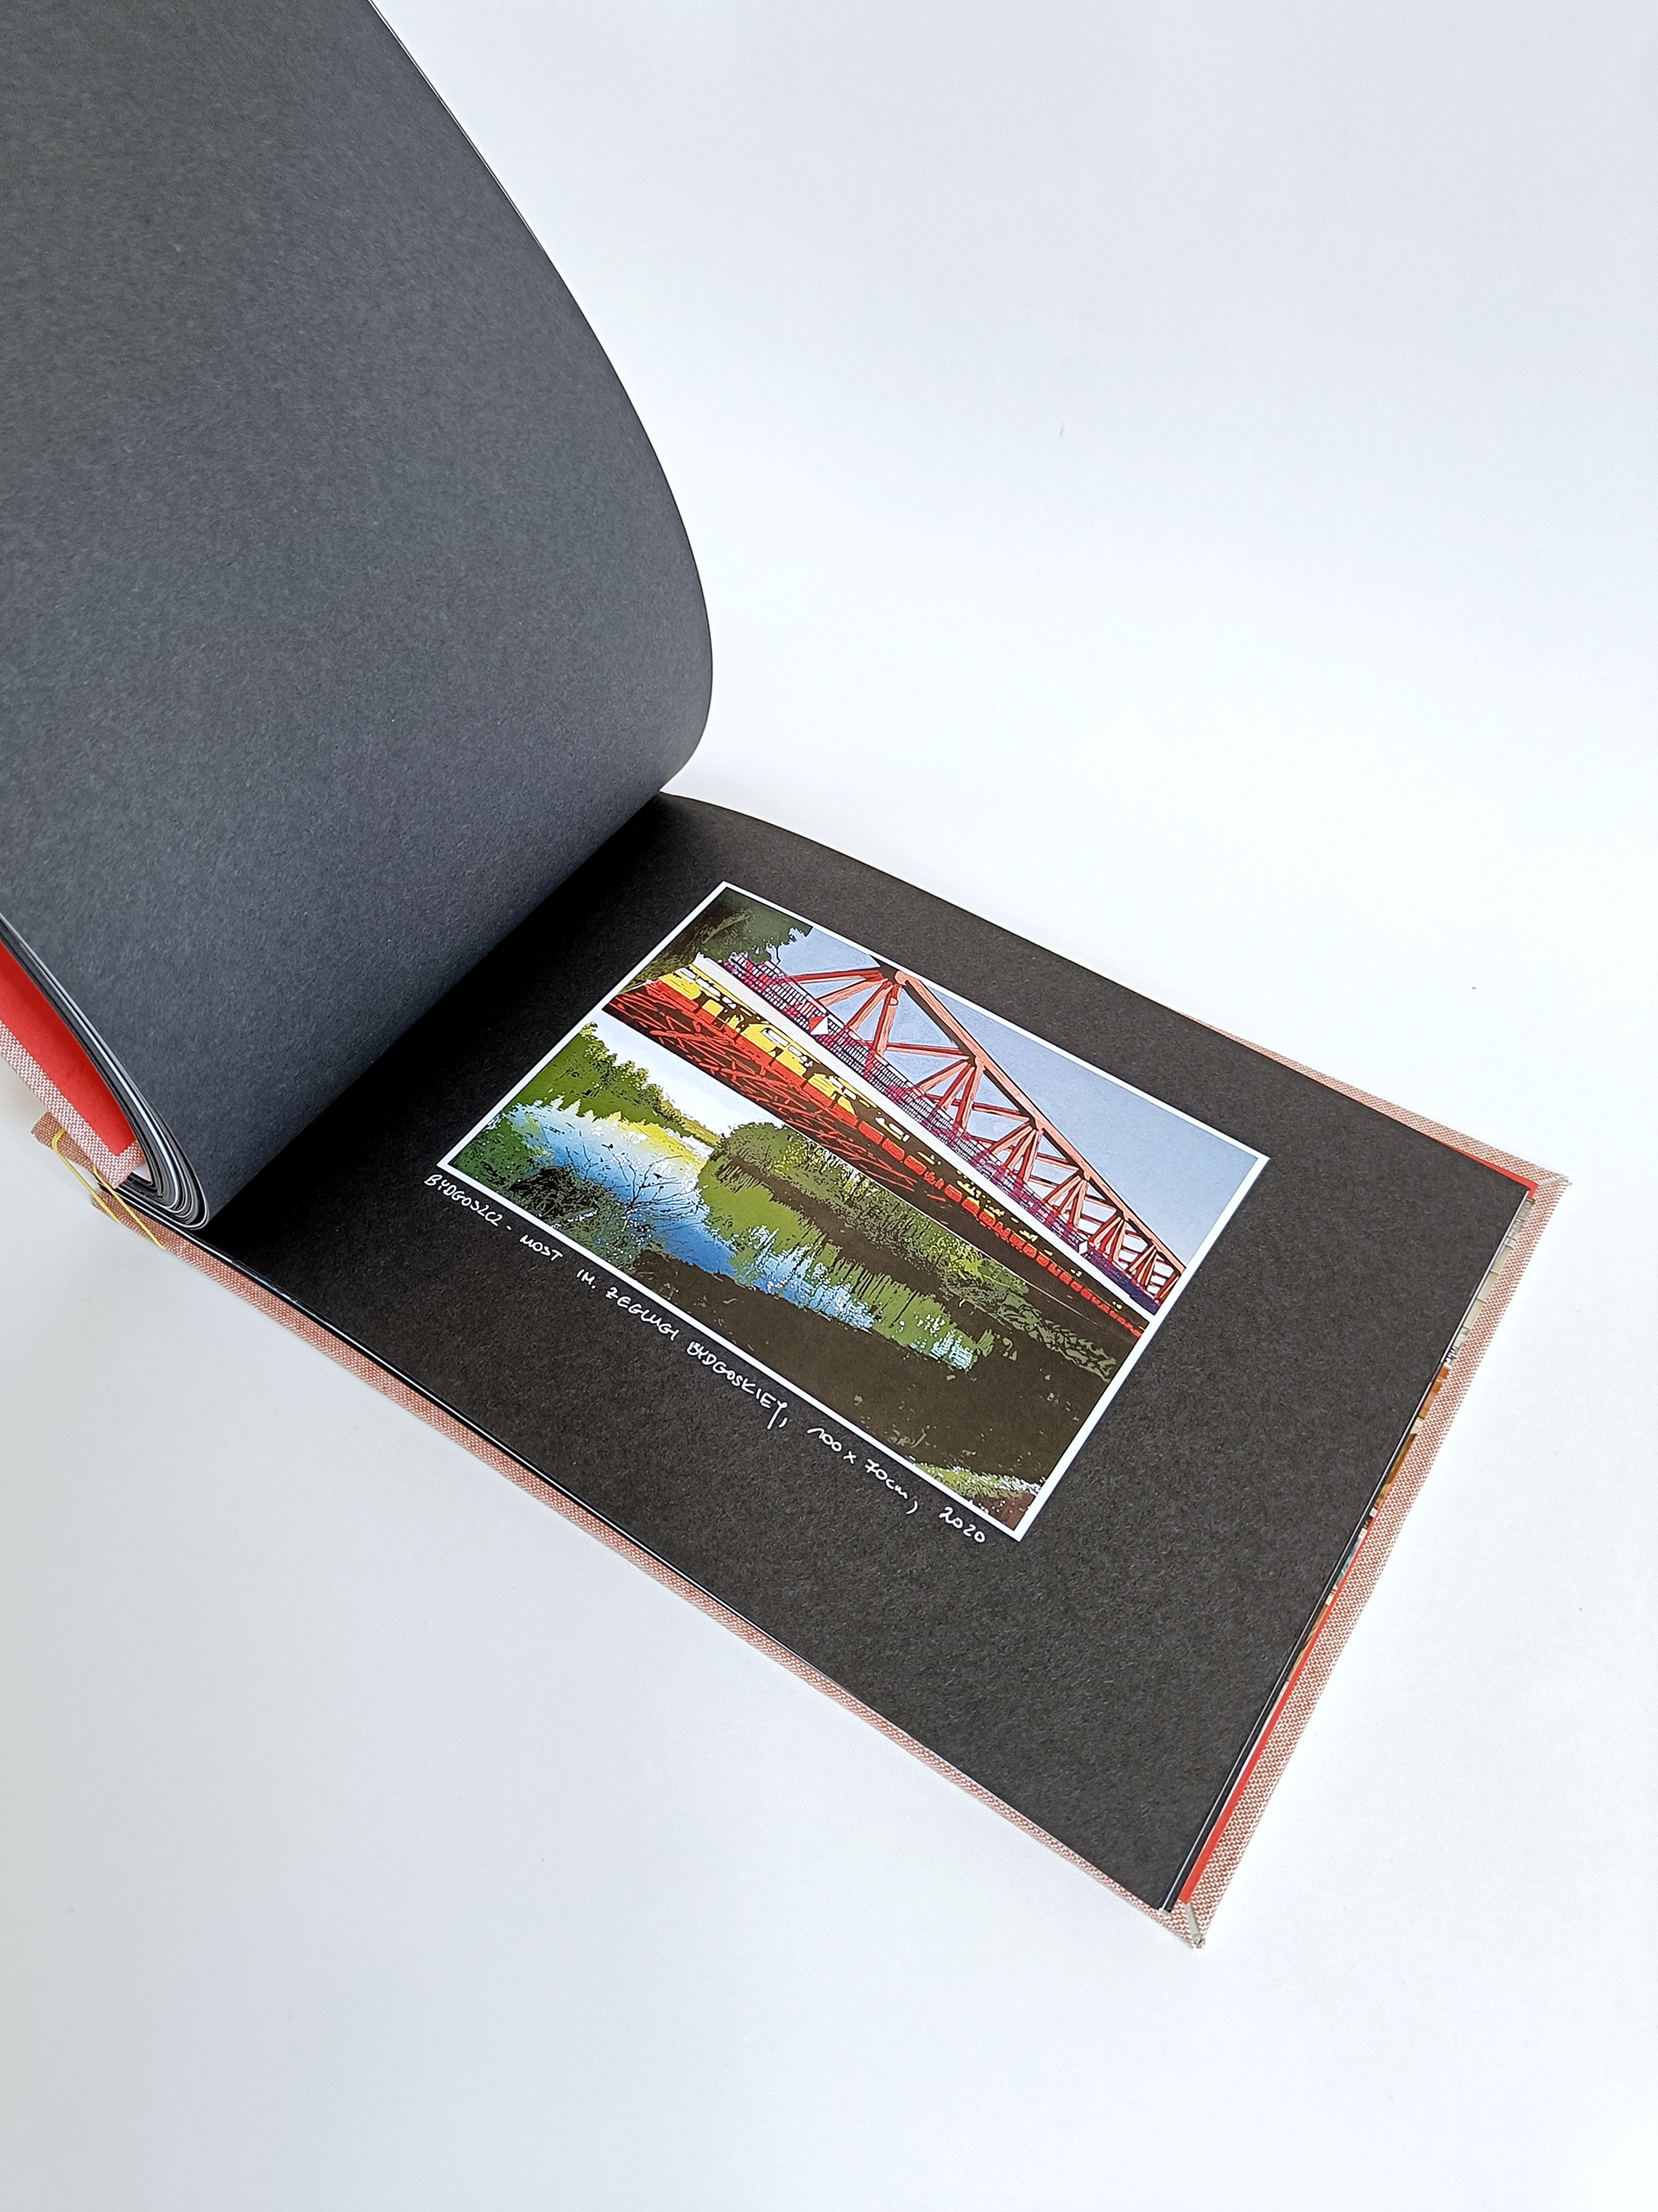 Fotografia przedstawia otwarte Portfolio w formie albumu, na czarnych kartkach widoczna grafika przedstawiająca stary metalowy most.